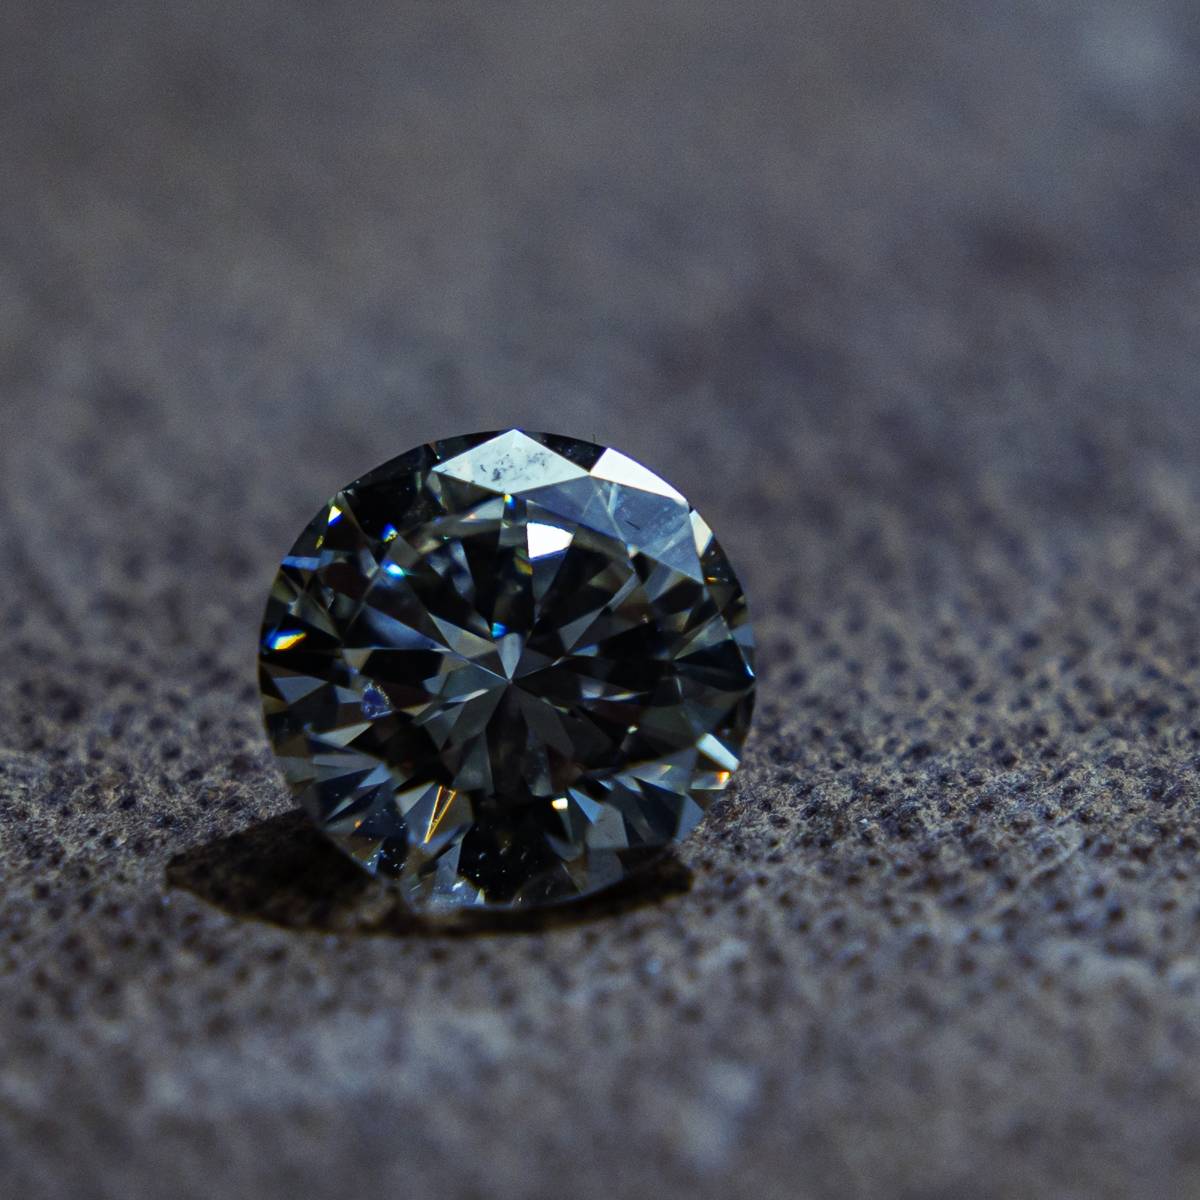 Expertiser gratuitement mon diamant par un expert en pierres précieuses proche de Nîmes